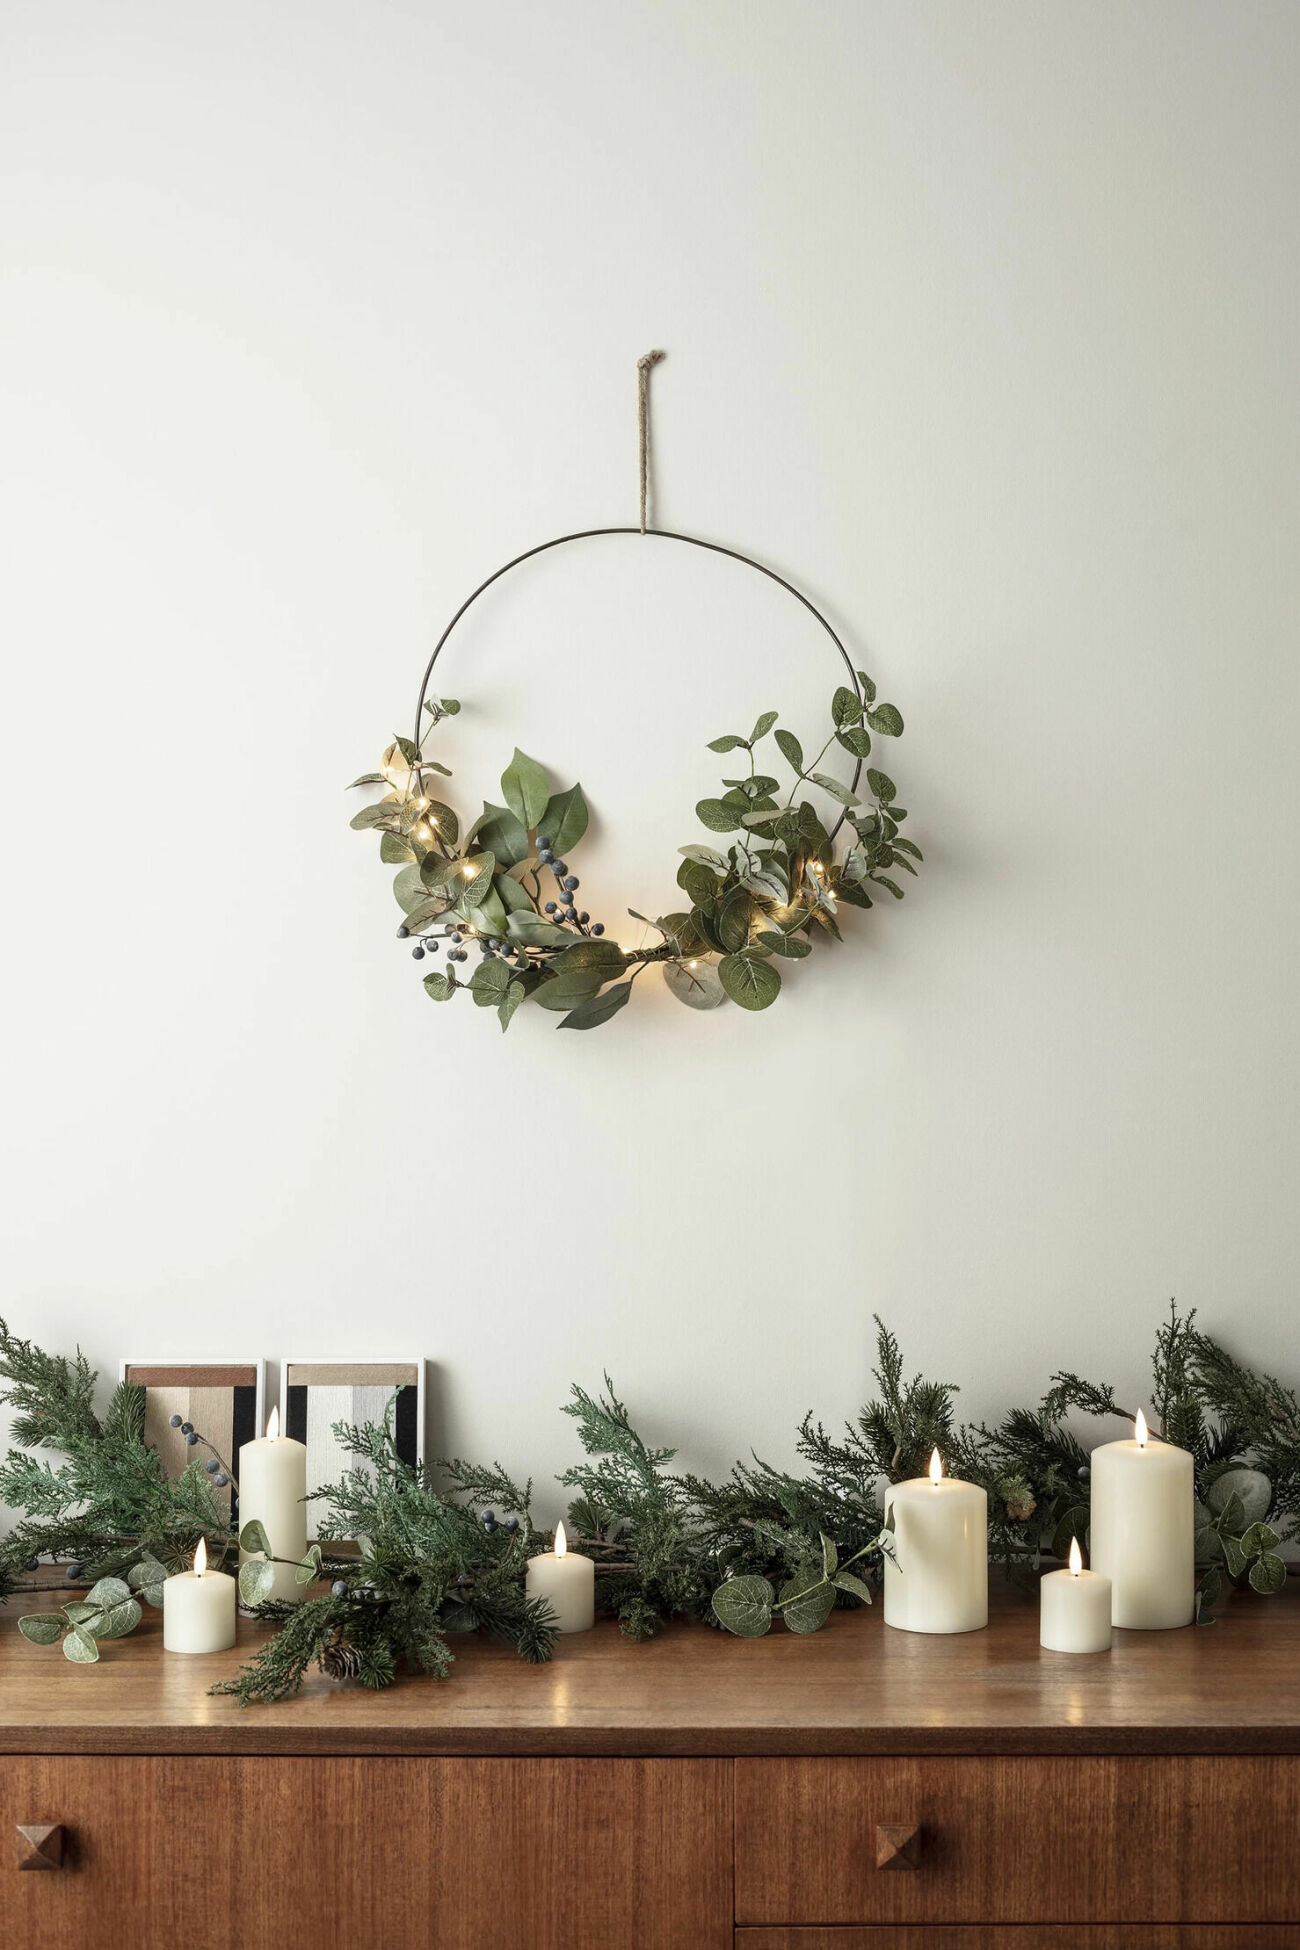 Snygga jultrender enligt Pinterest, krans med metallring